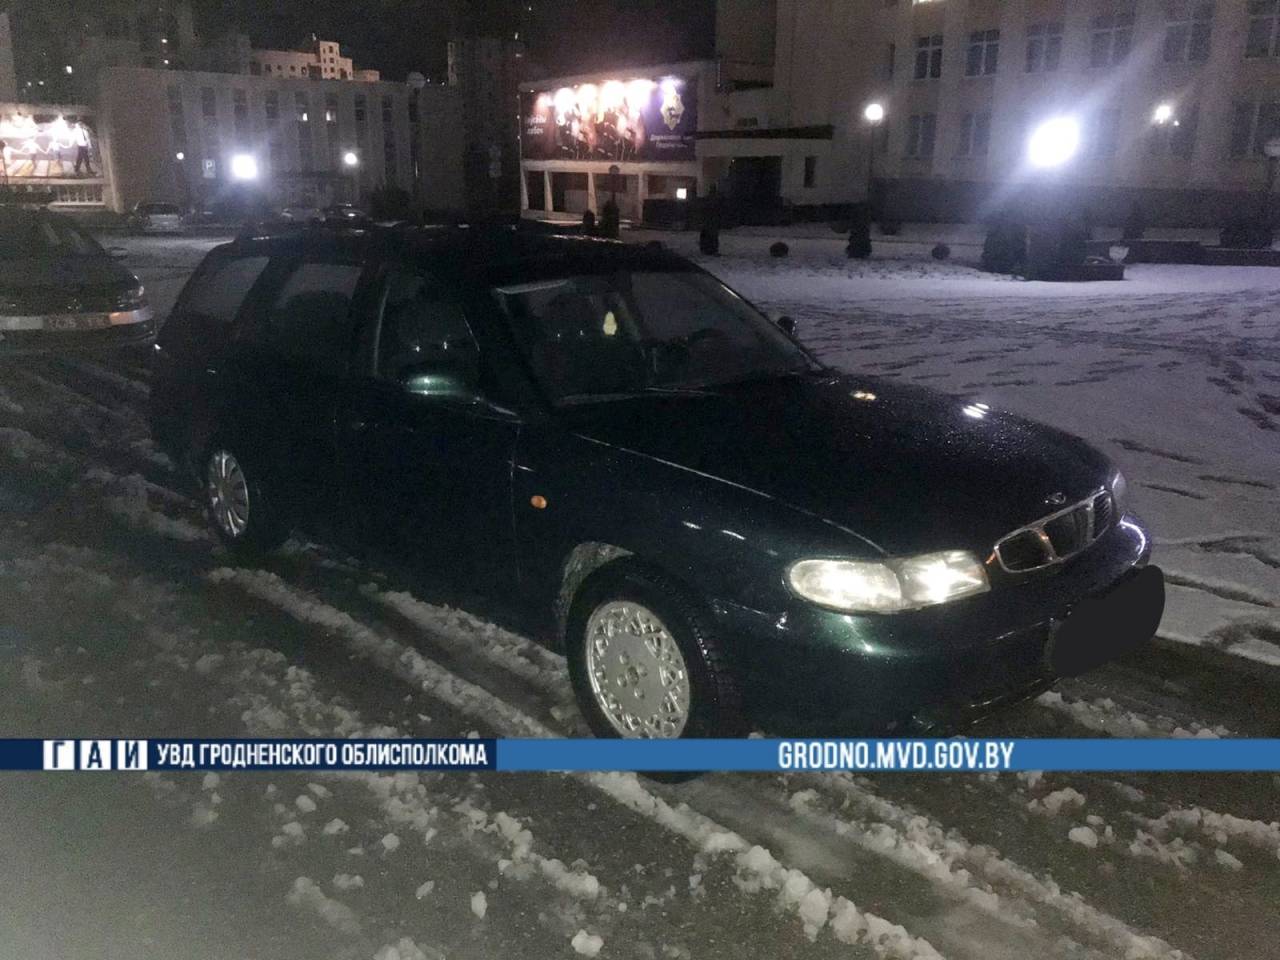 В Гродно пьяный бесправник решил во время снегопада оценить свои способности в управлении авто и попал в аварию